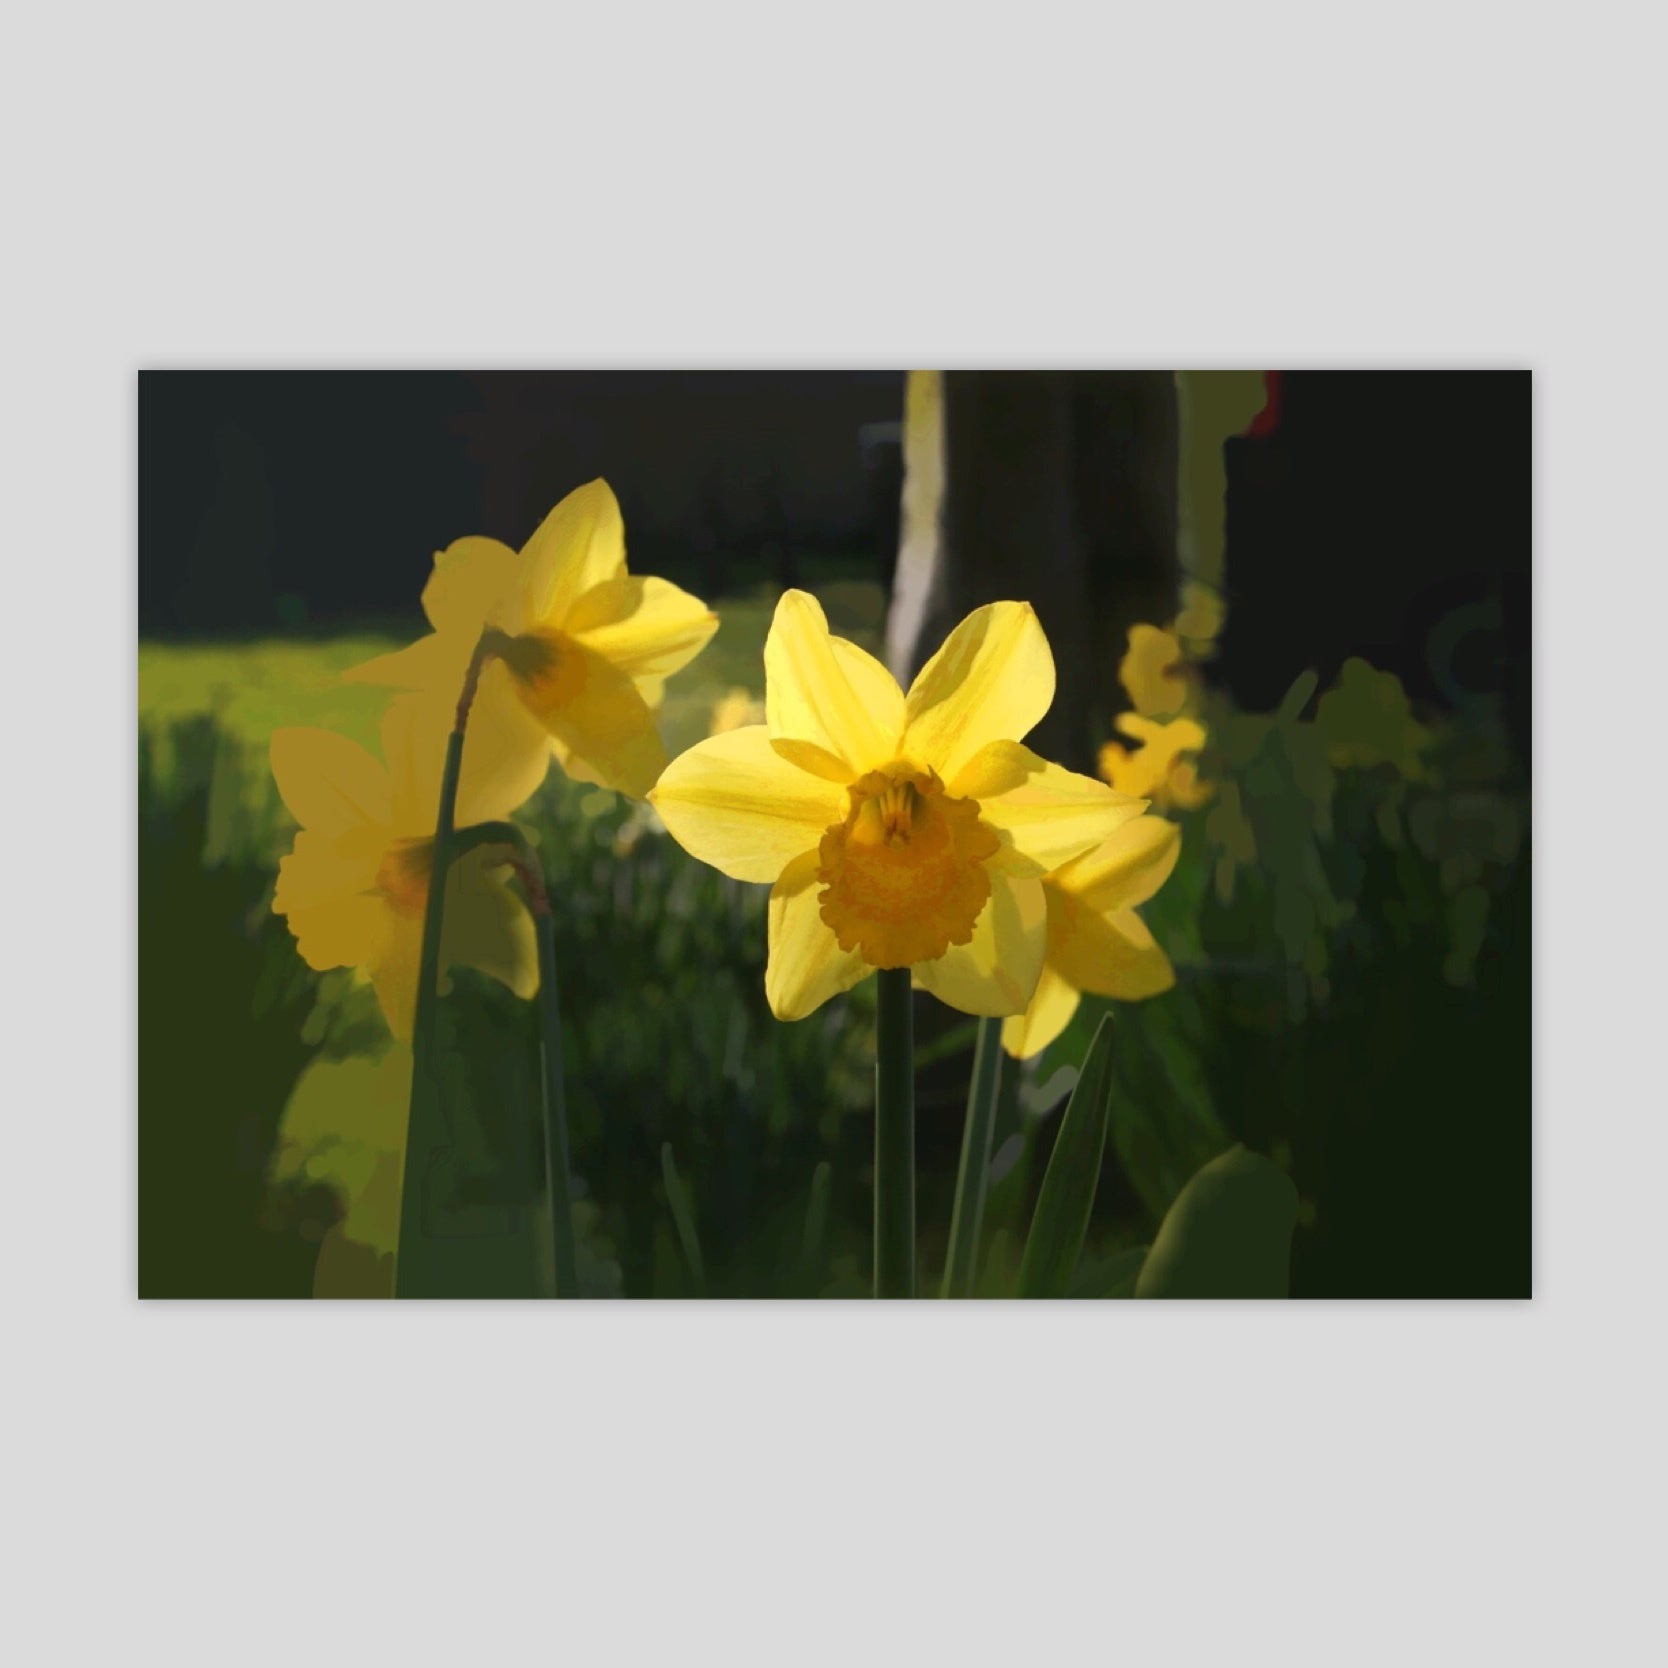 Daffodil (3035R-M7)